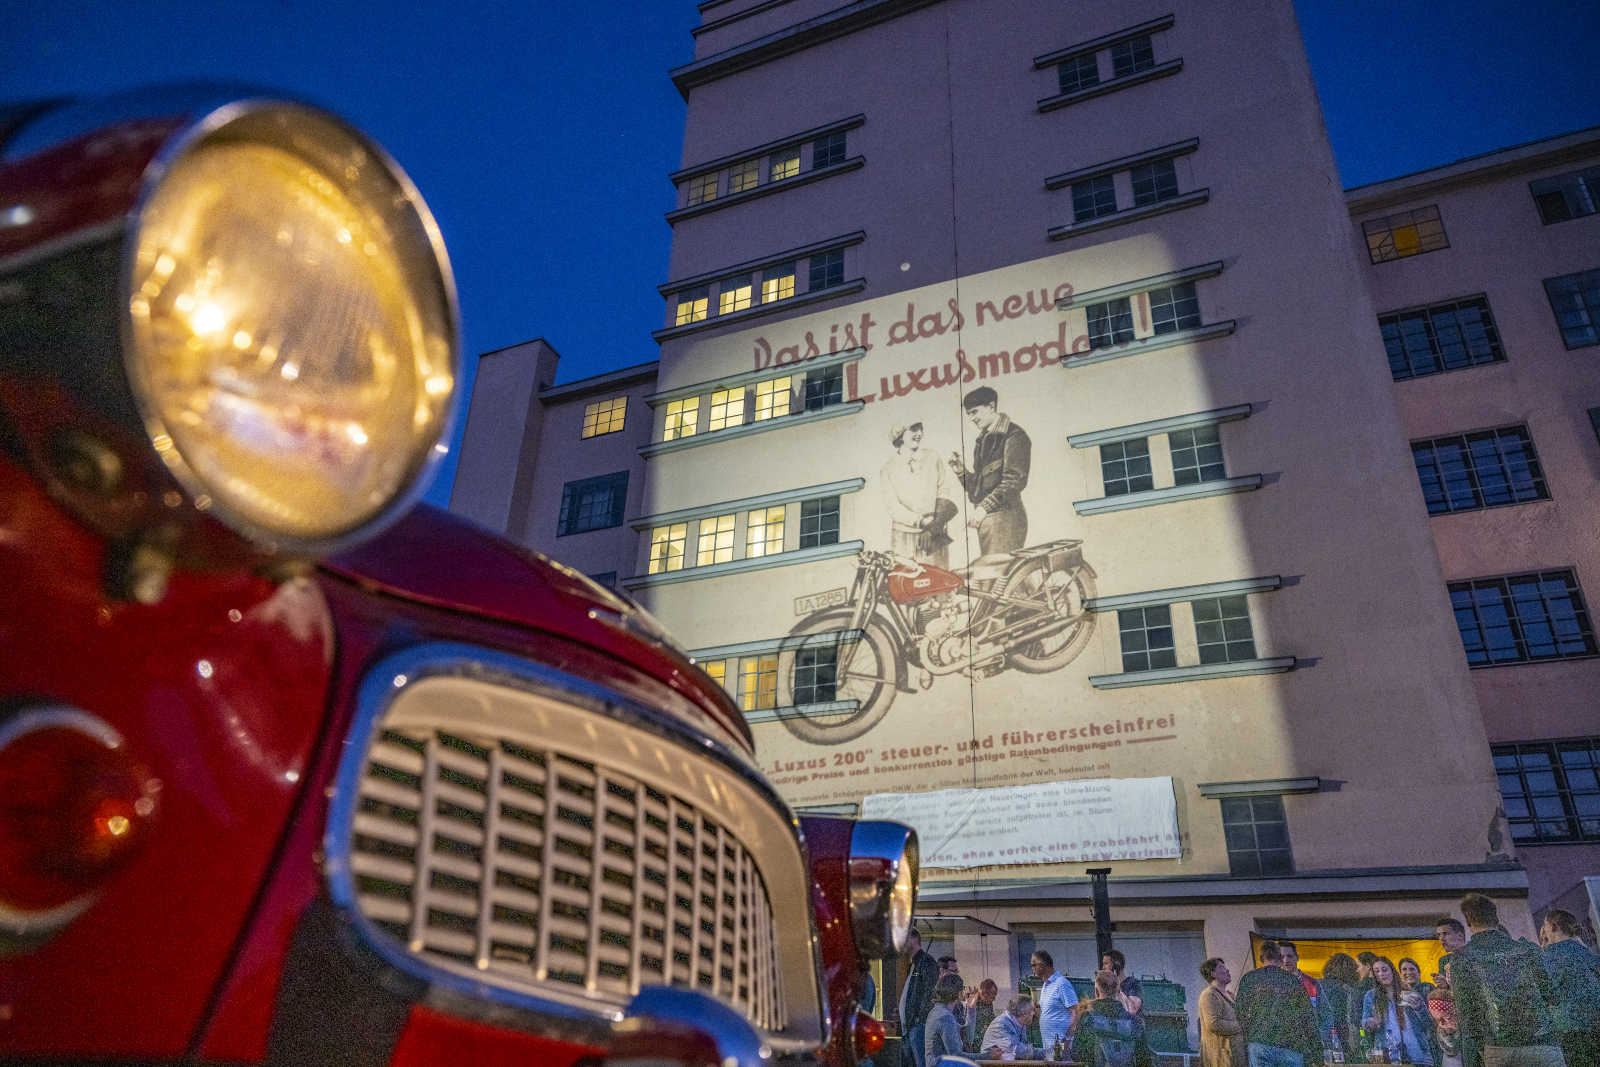 Die Hochgarage, beleuchtet mit einem DKW-Werbebild (Foto: Detlef Müller)